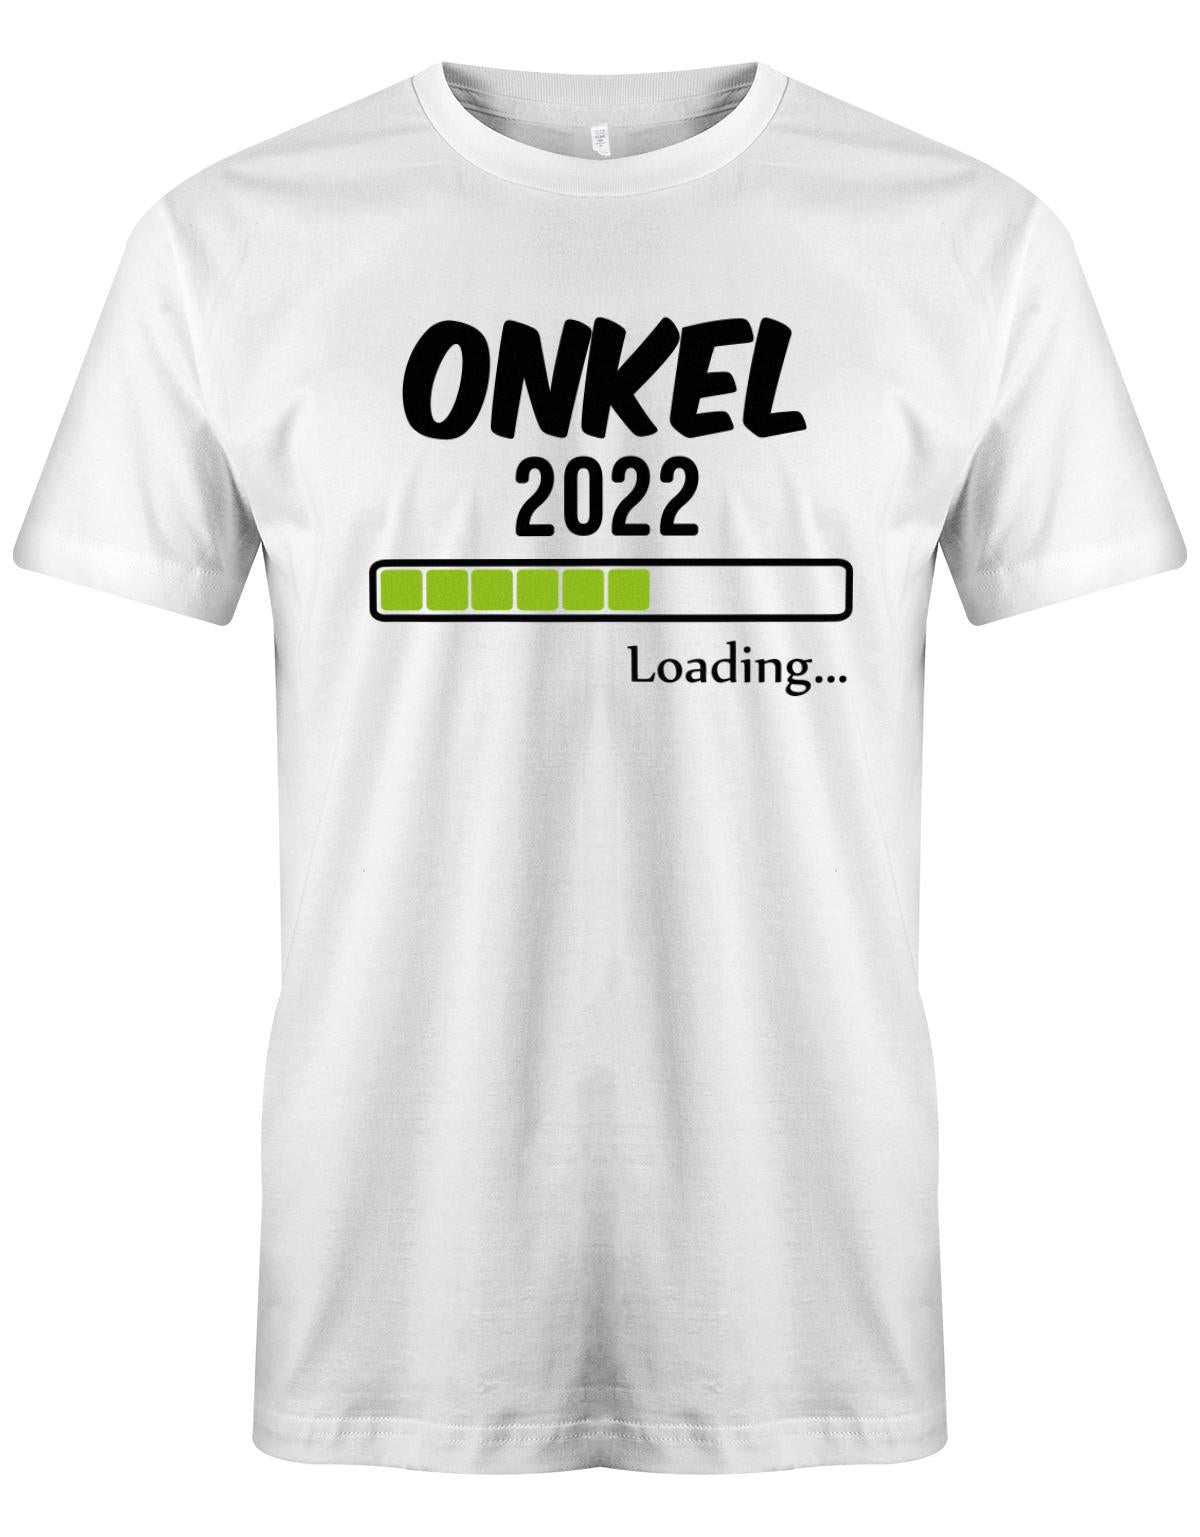 Onkel-loading-2022-Herren-Shirt-Weiss